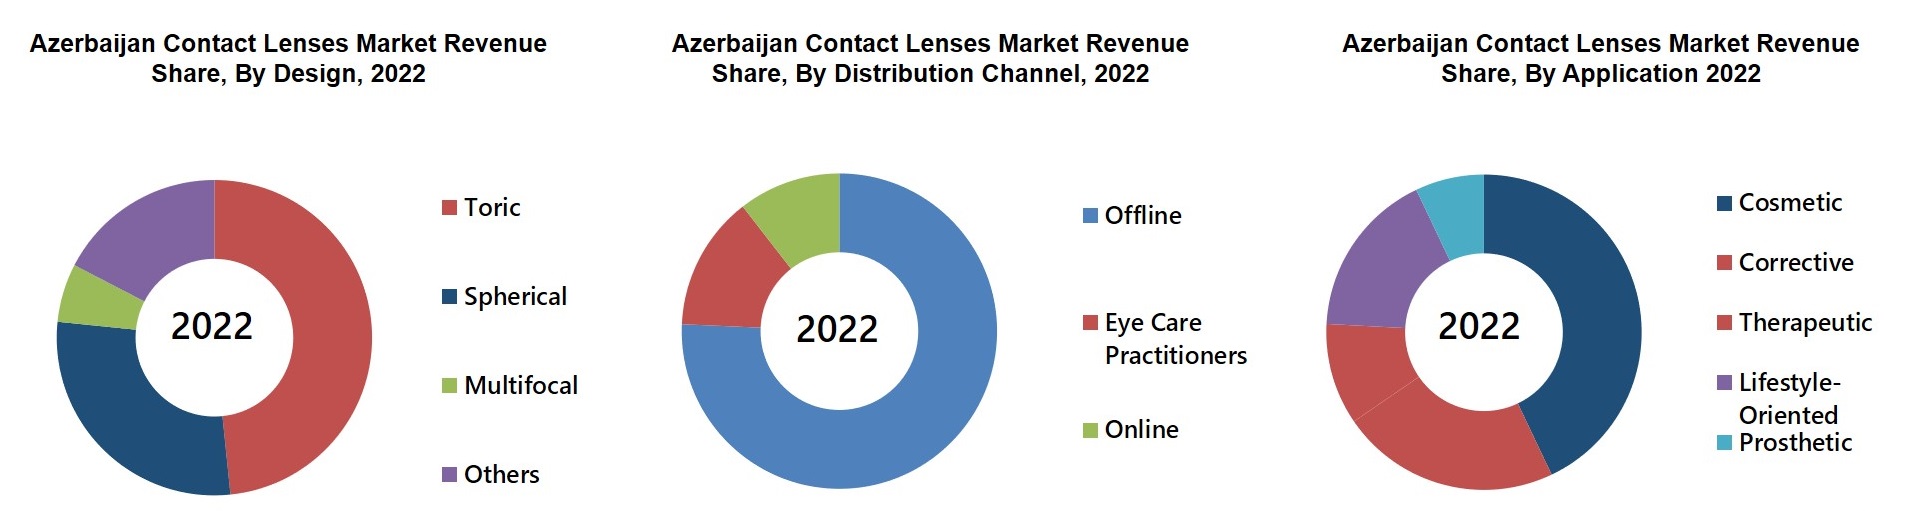 Azerbaijan Contact Lenses Market